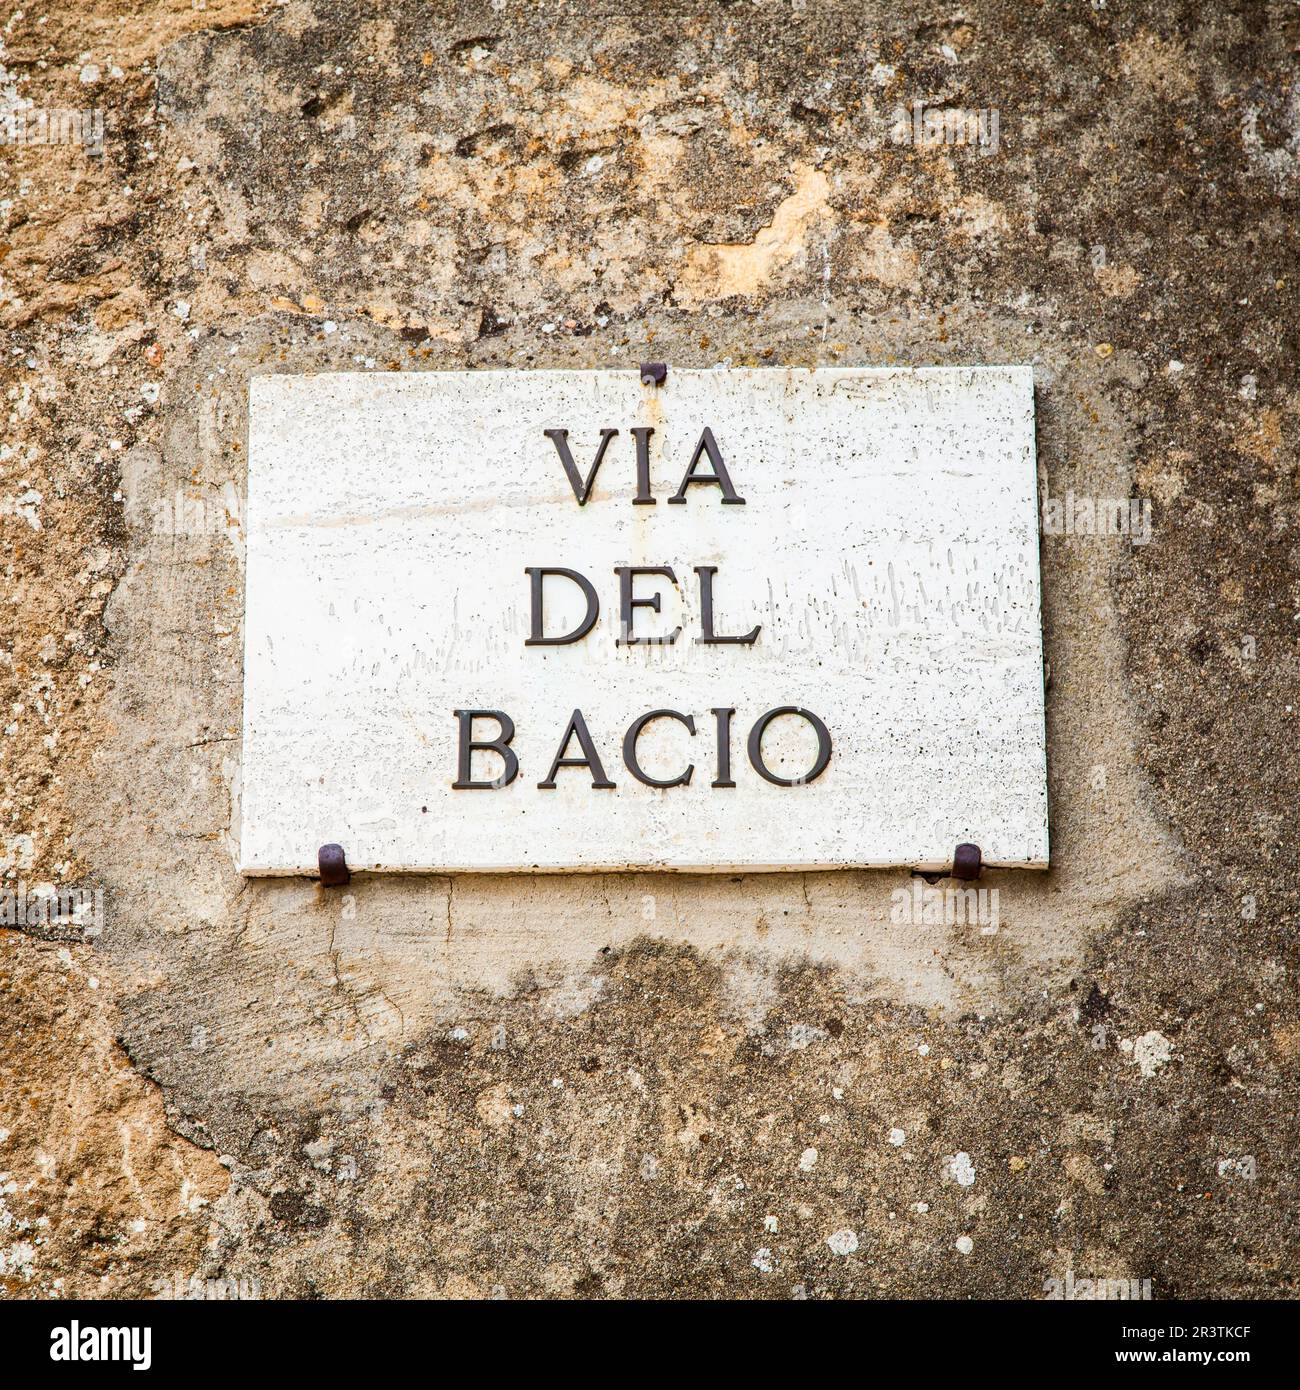 Italy - Pienza town. The streetsign of Via del Bacio (Kiss Street) Stock Photo